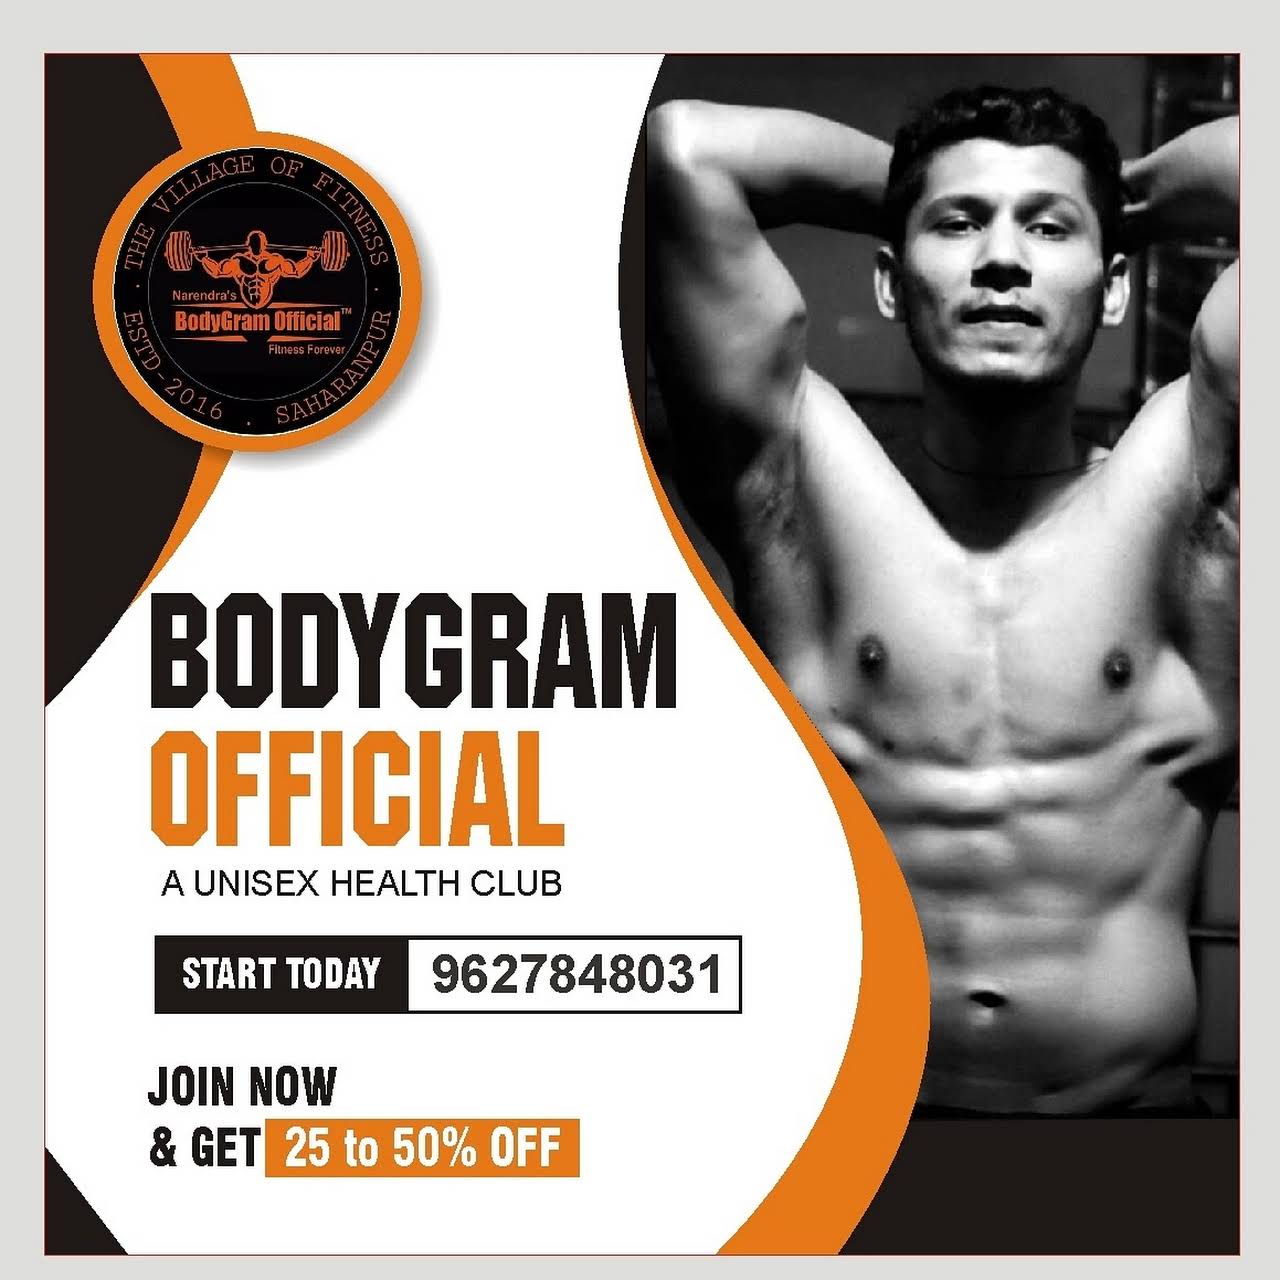 BodyGram OffiCial™ Gym - A Unisex Health Club